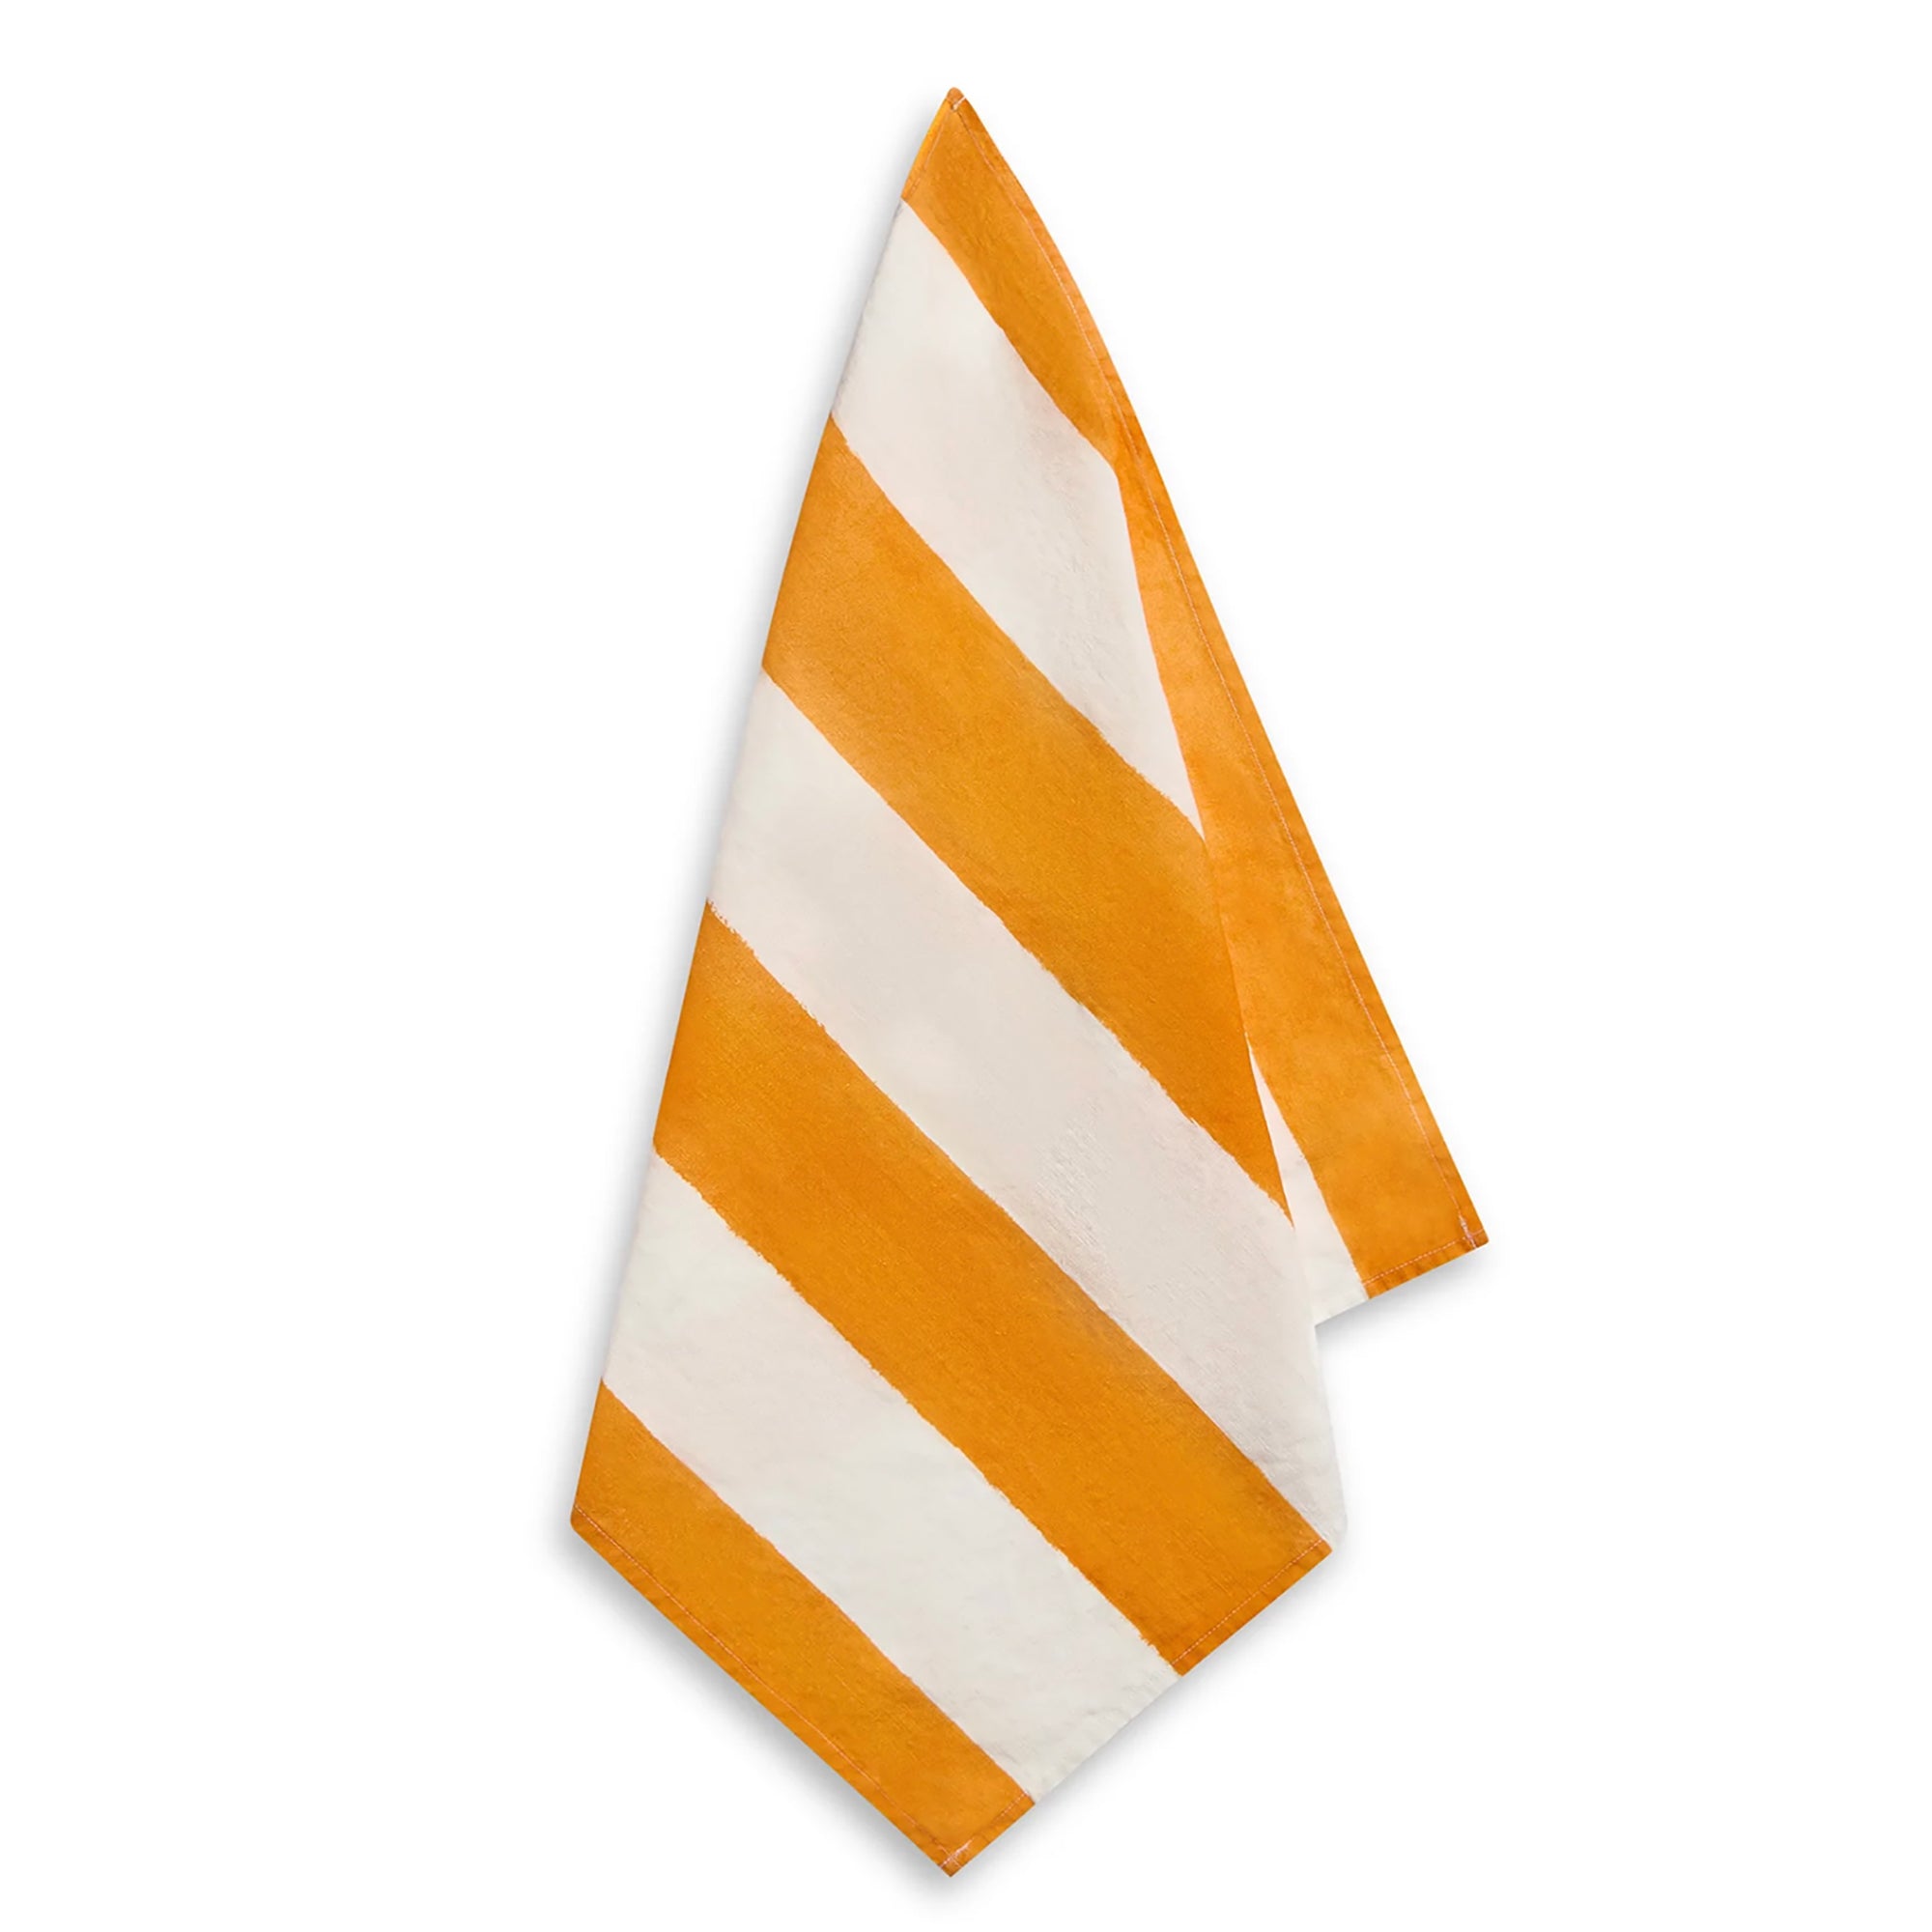 Stripe Linen Napkins - Orange & White (set of 4)